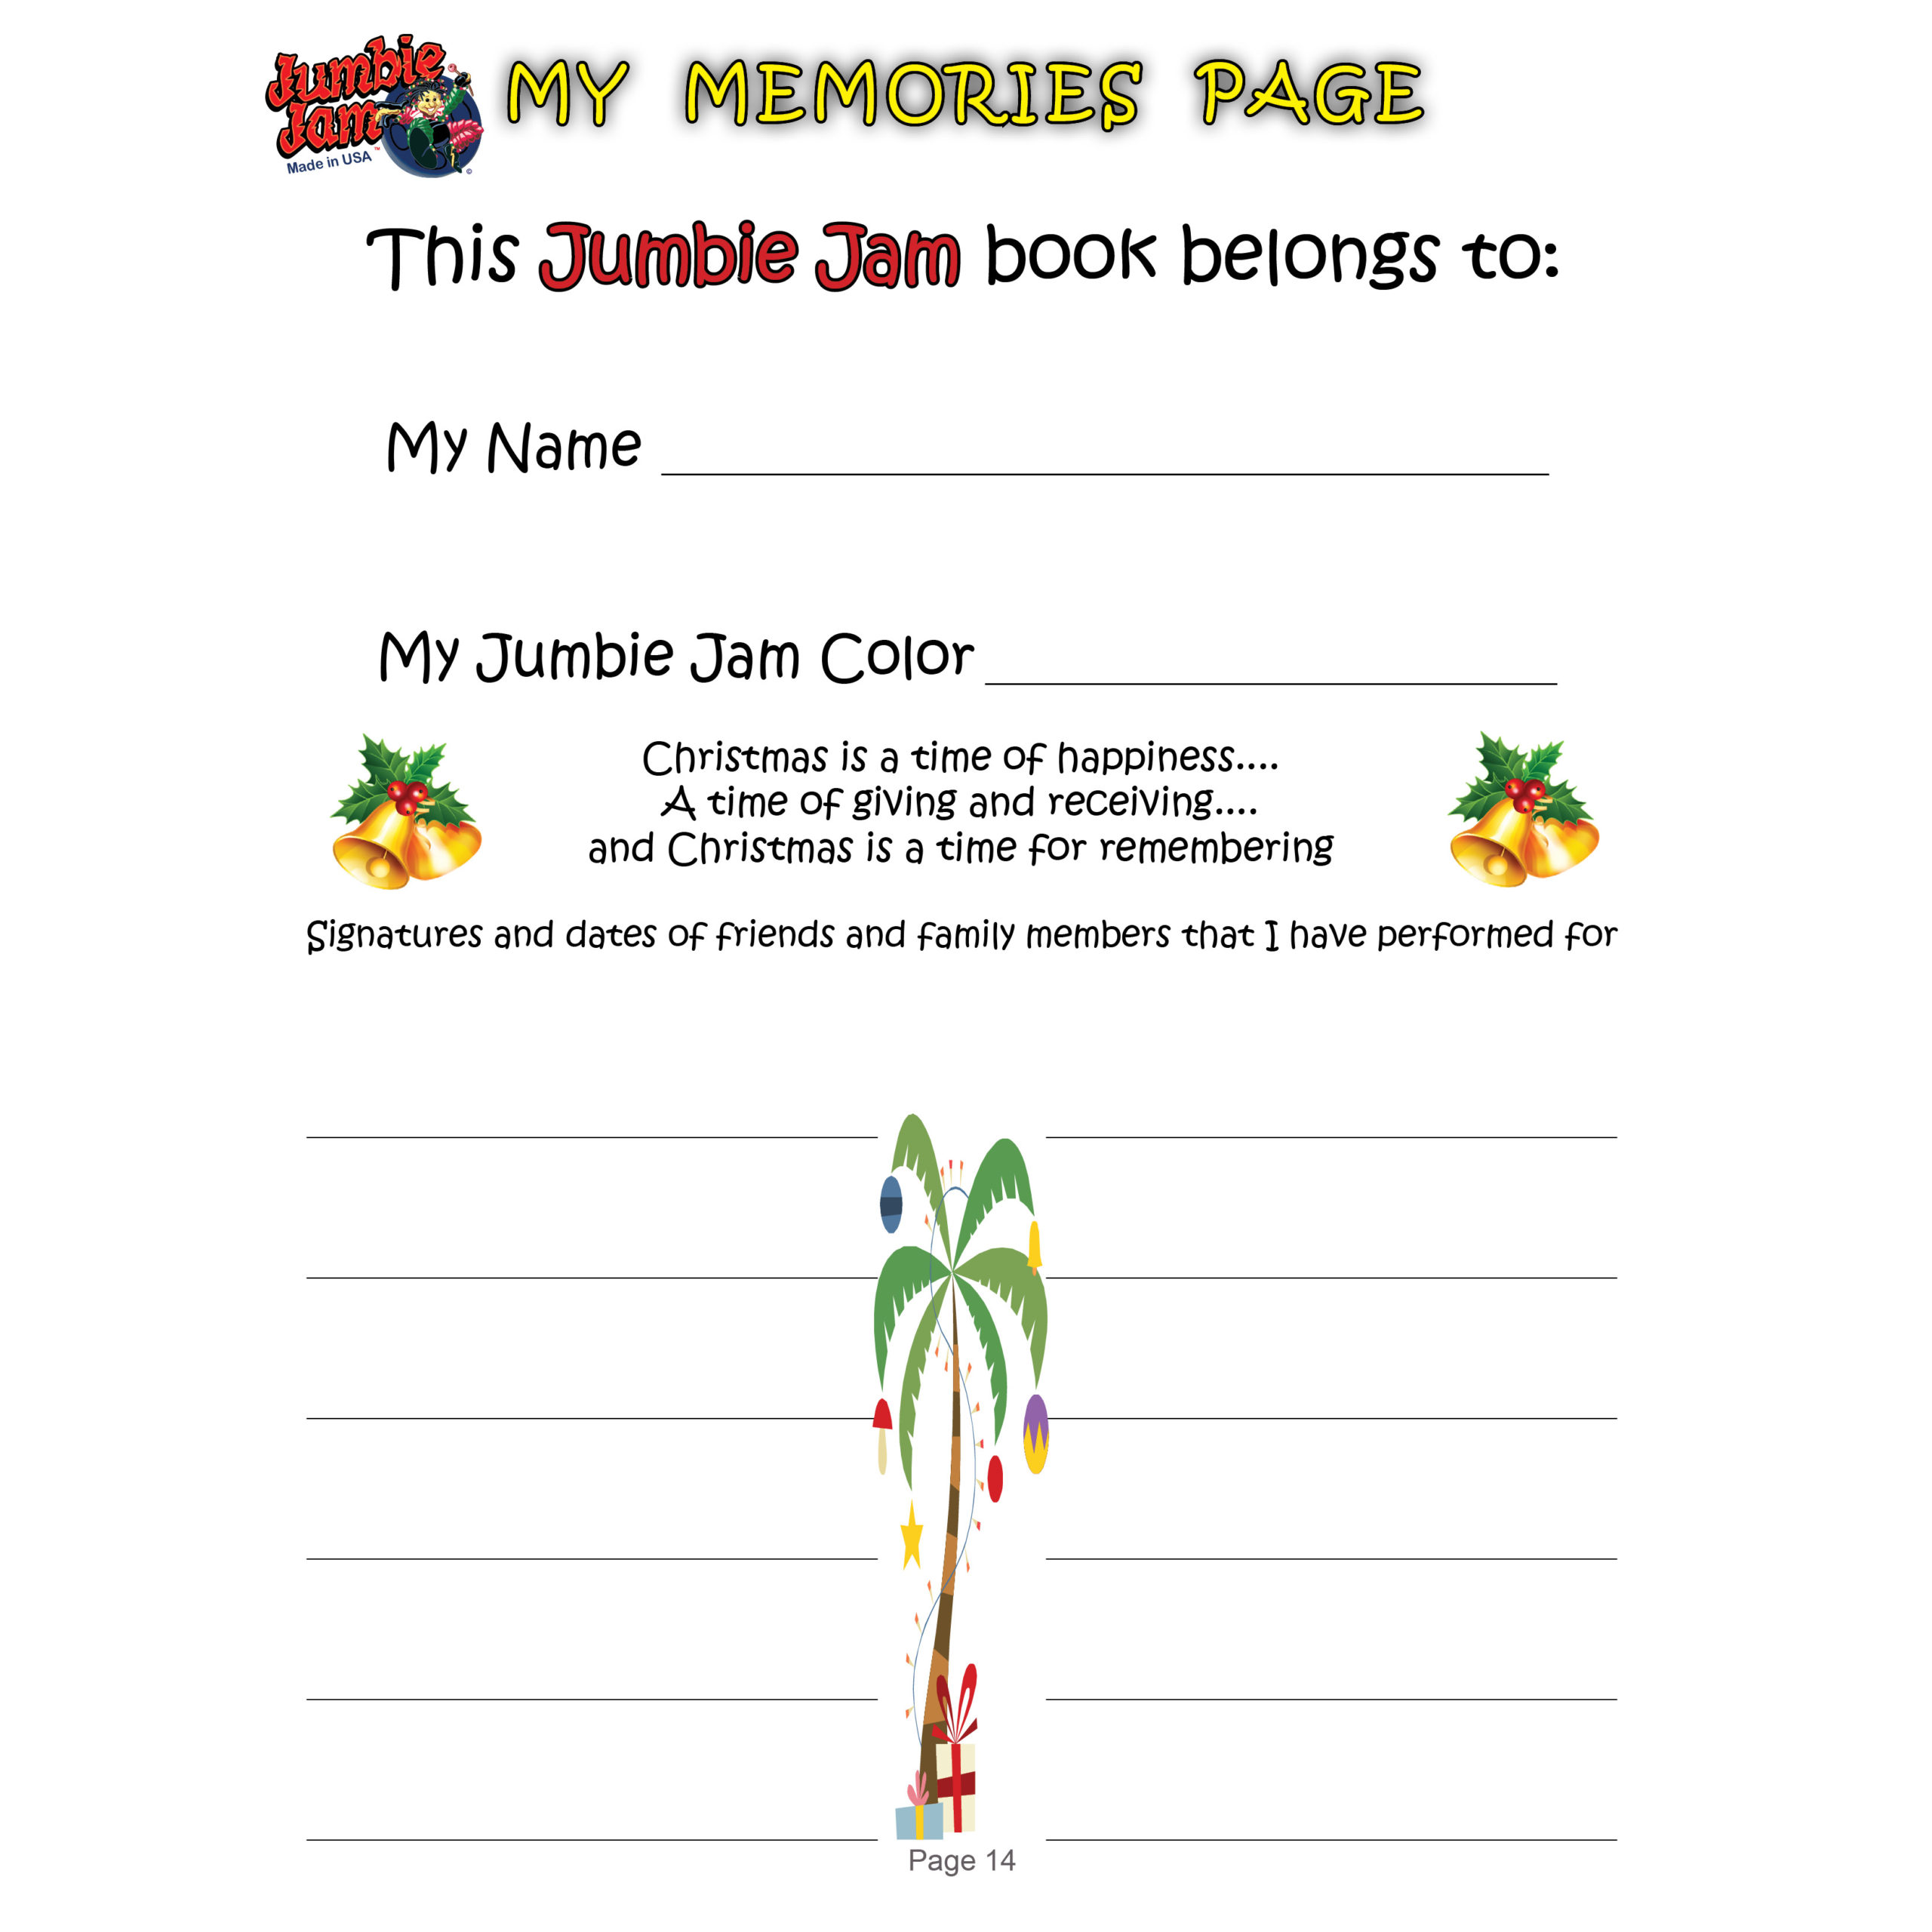 Panyard Jumbie Jam Songs by Letter - Christmas Songs